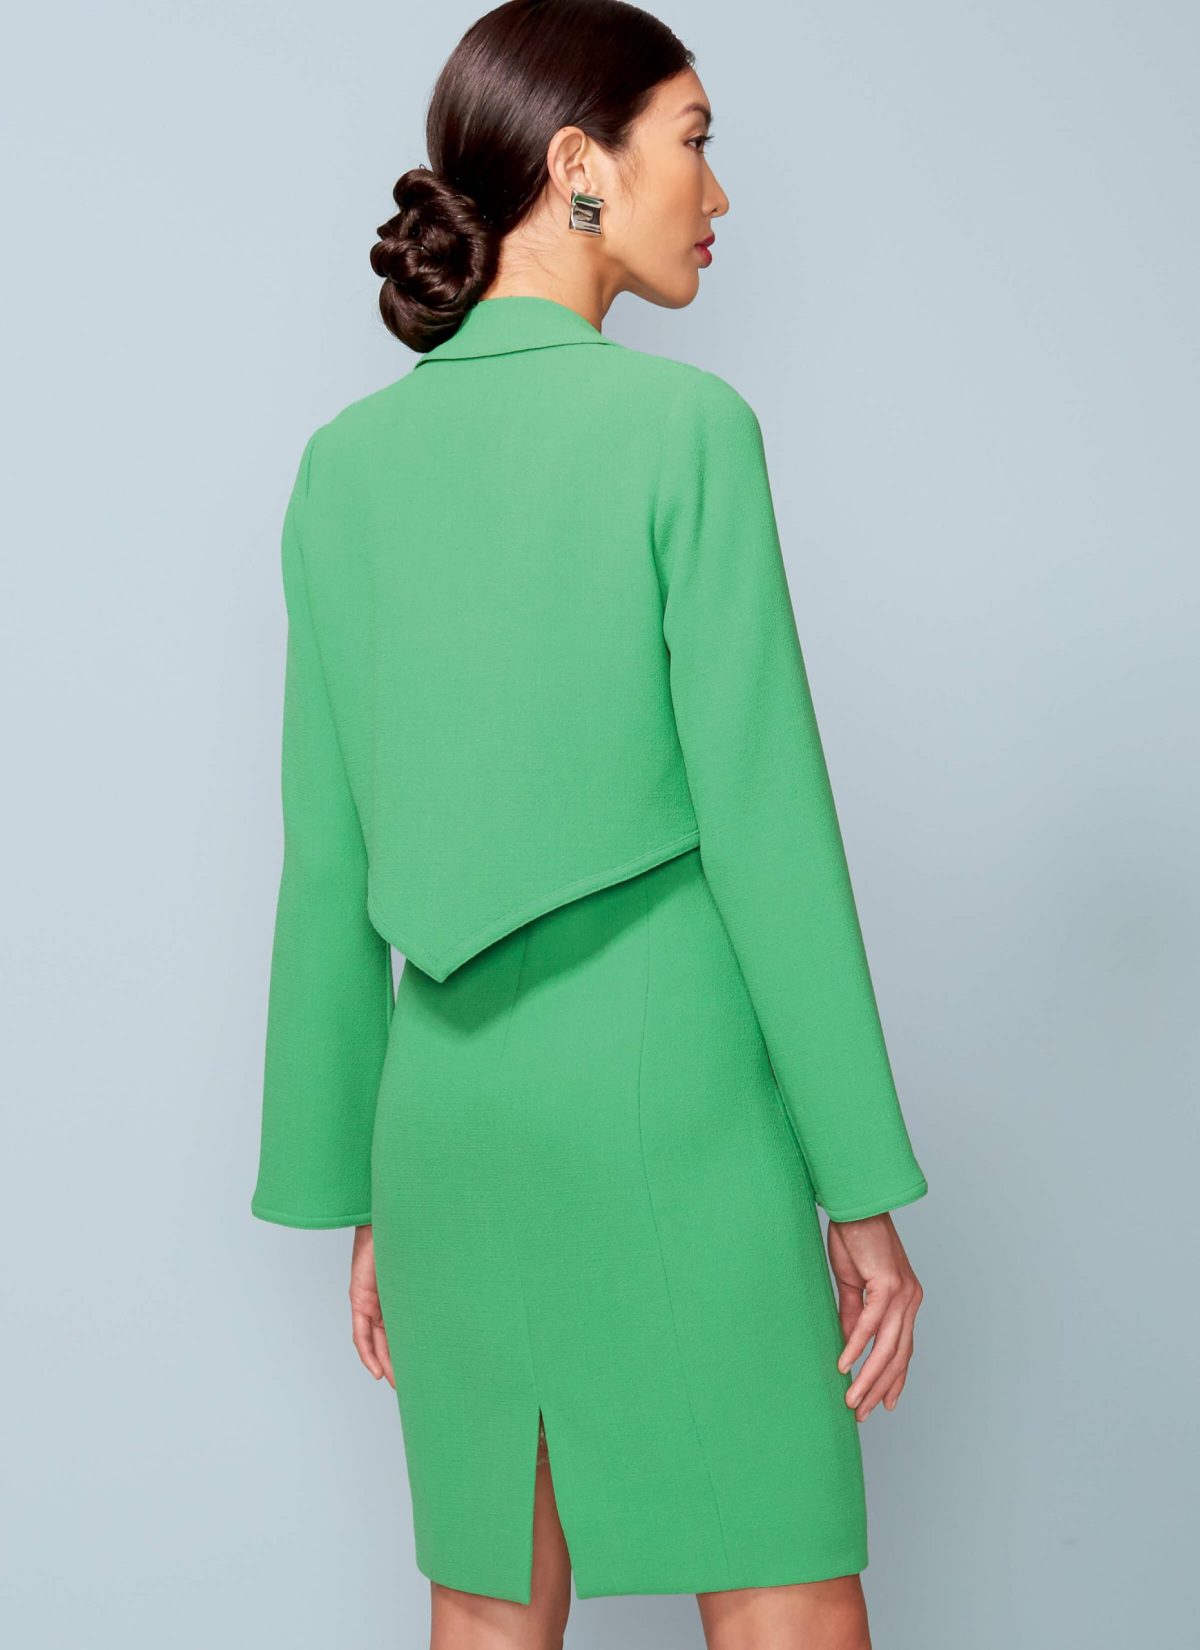 Vogue Patterns V1536 Misses'/Misses' Petite Cropped Jacket and V-Neck, Princess Seam Dress